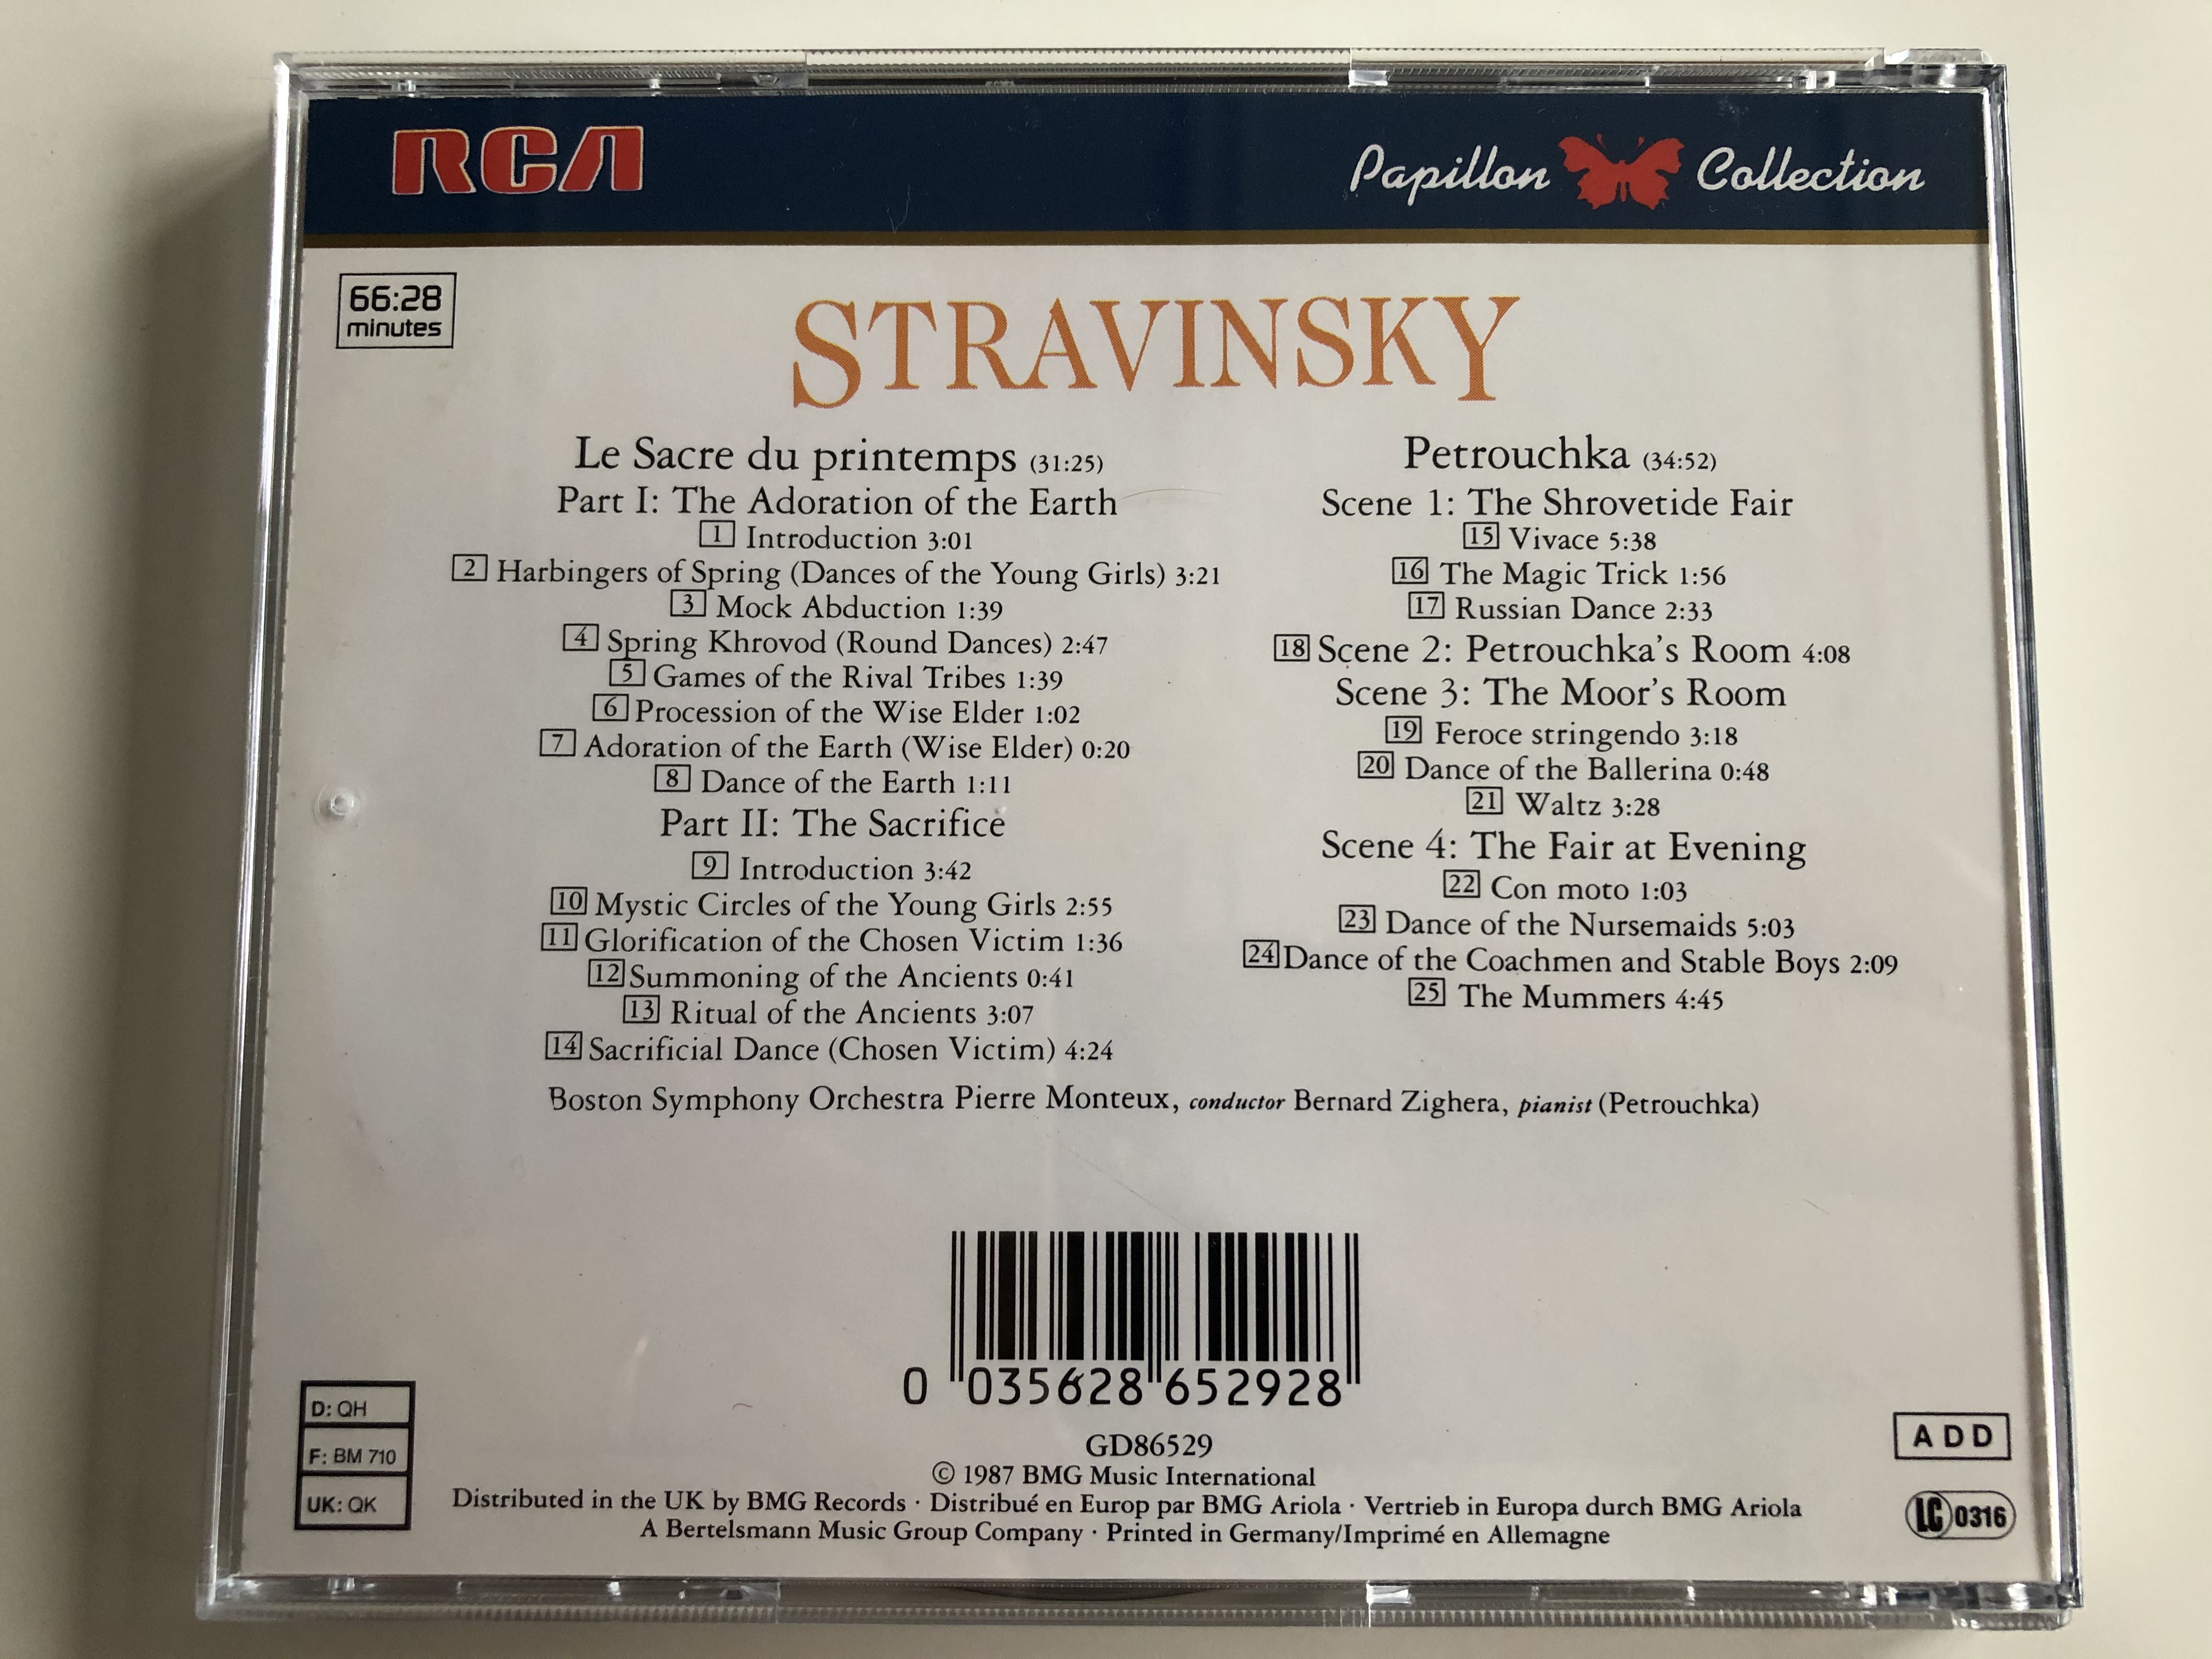 stravinsky-le-sacre-du-printemps-petrouchka-pierre-monteux-boston-symphony-orchestra-rca-audio-cd-1987-gd86529-5-.jpg